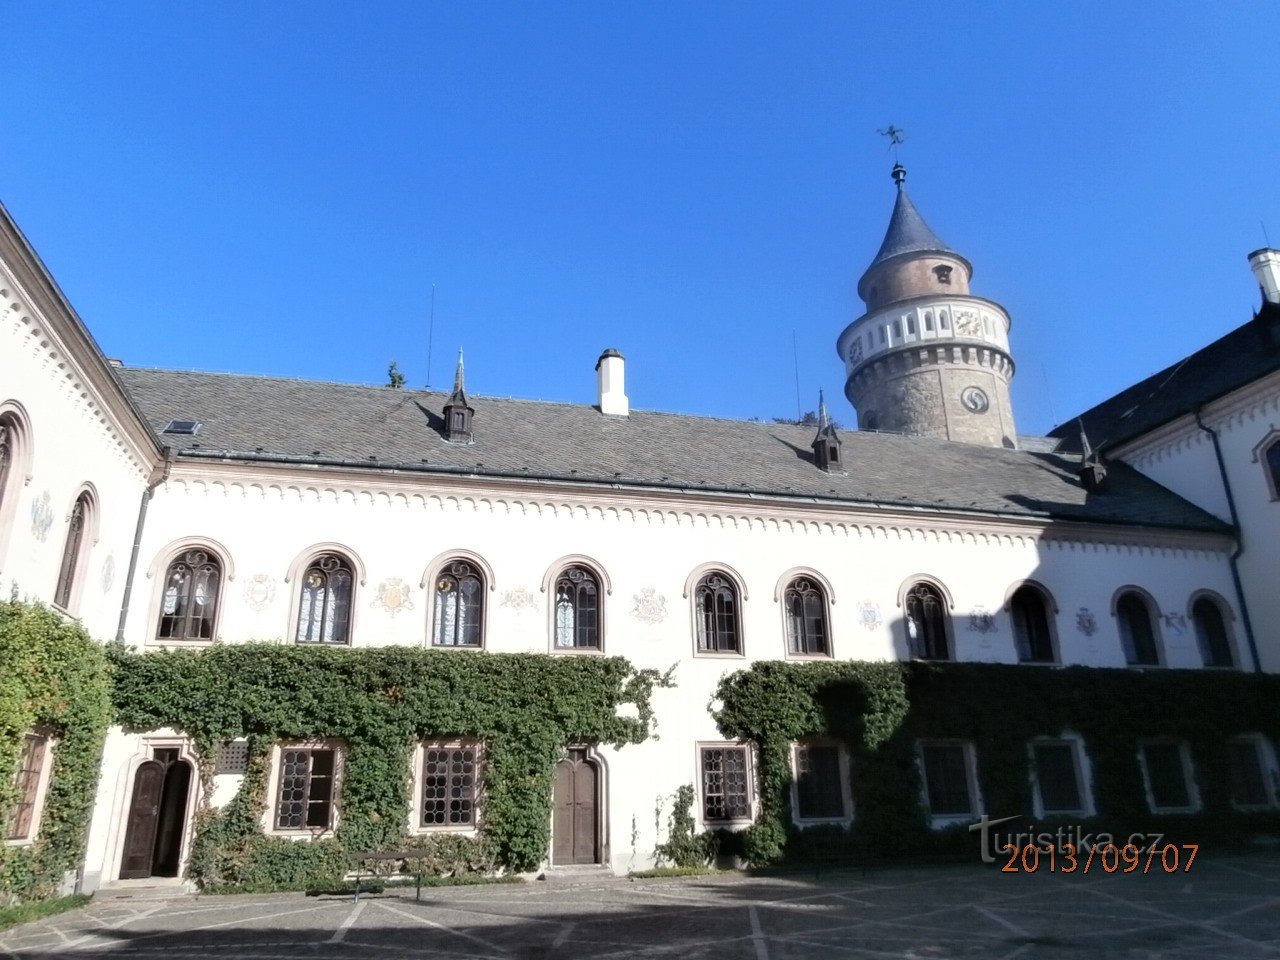 Romantisk slot Sychrov